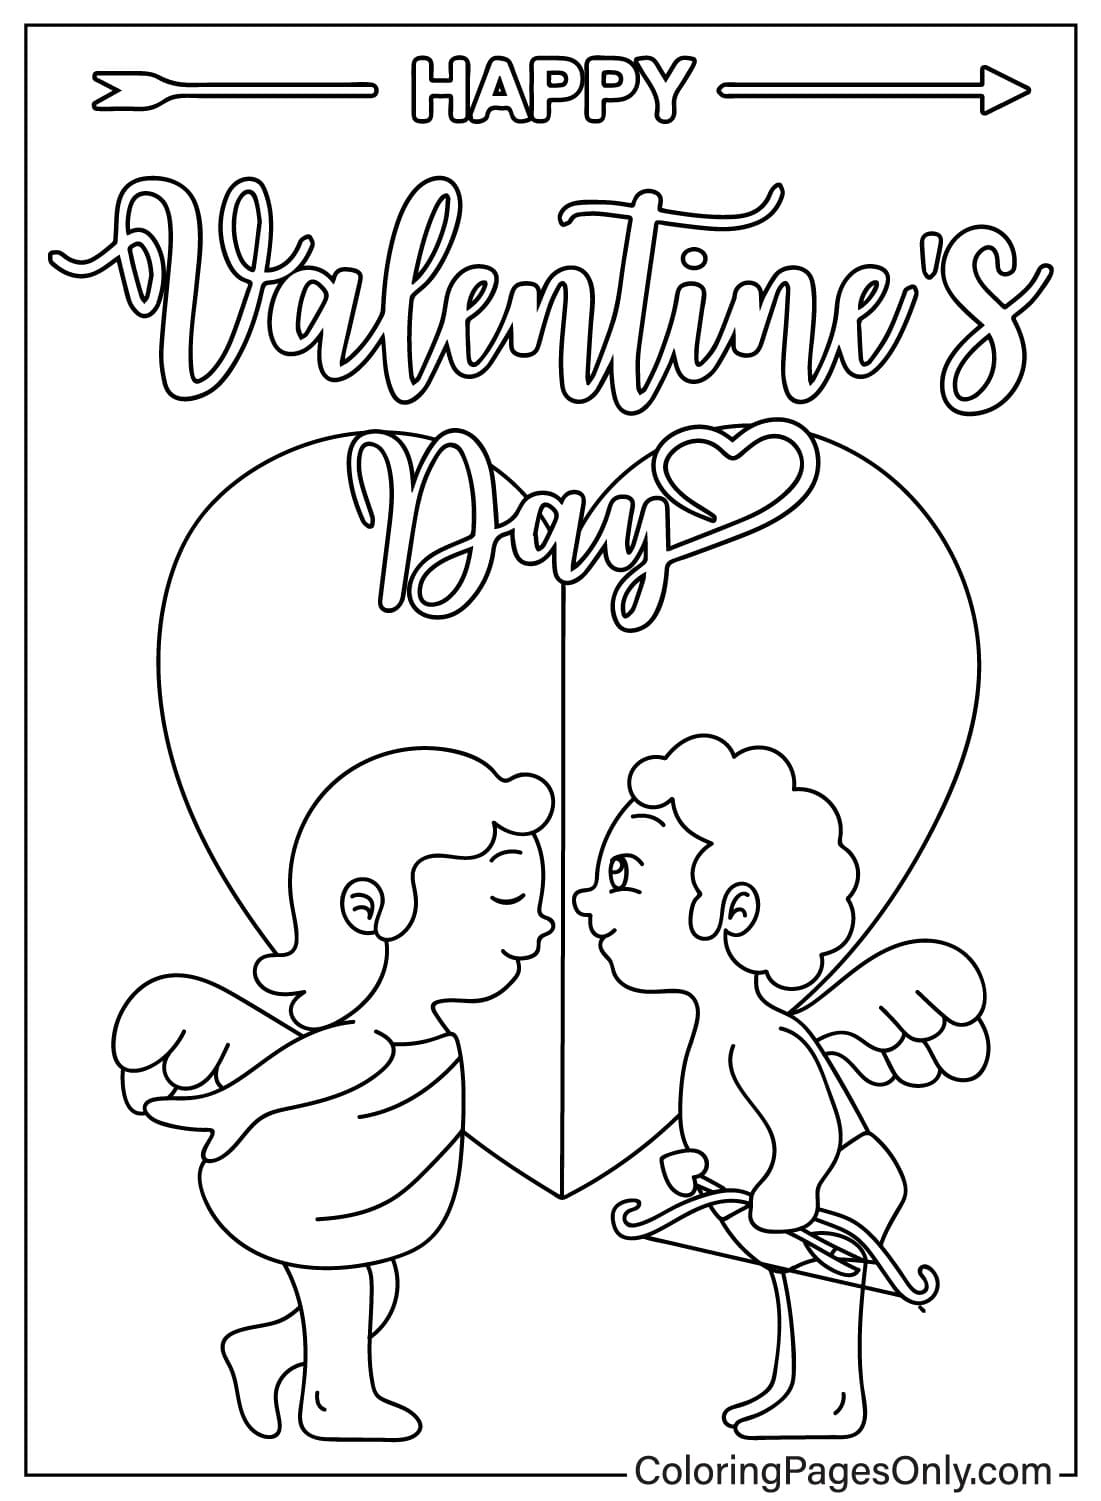 Página para colorear de Cupido del día de San Valentín gratis de Cupido